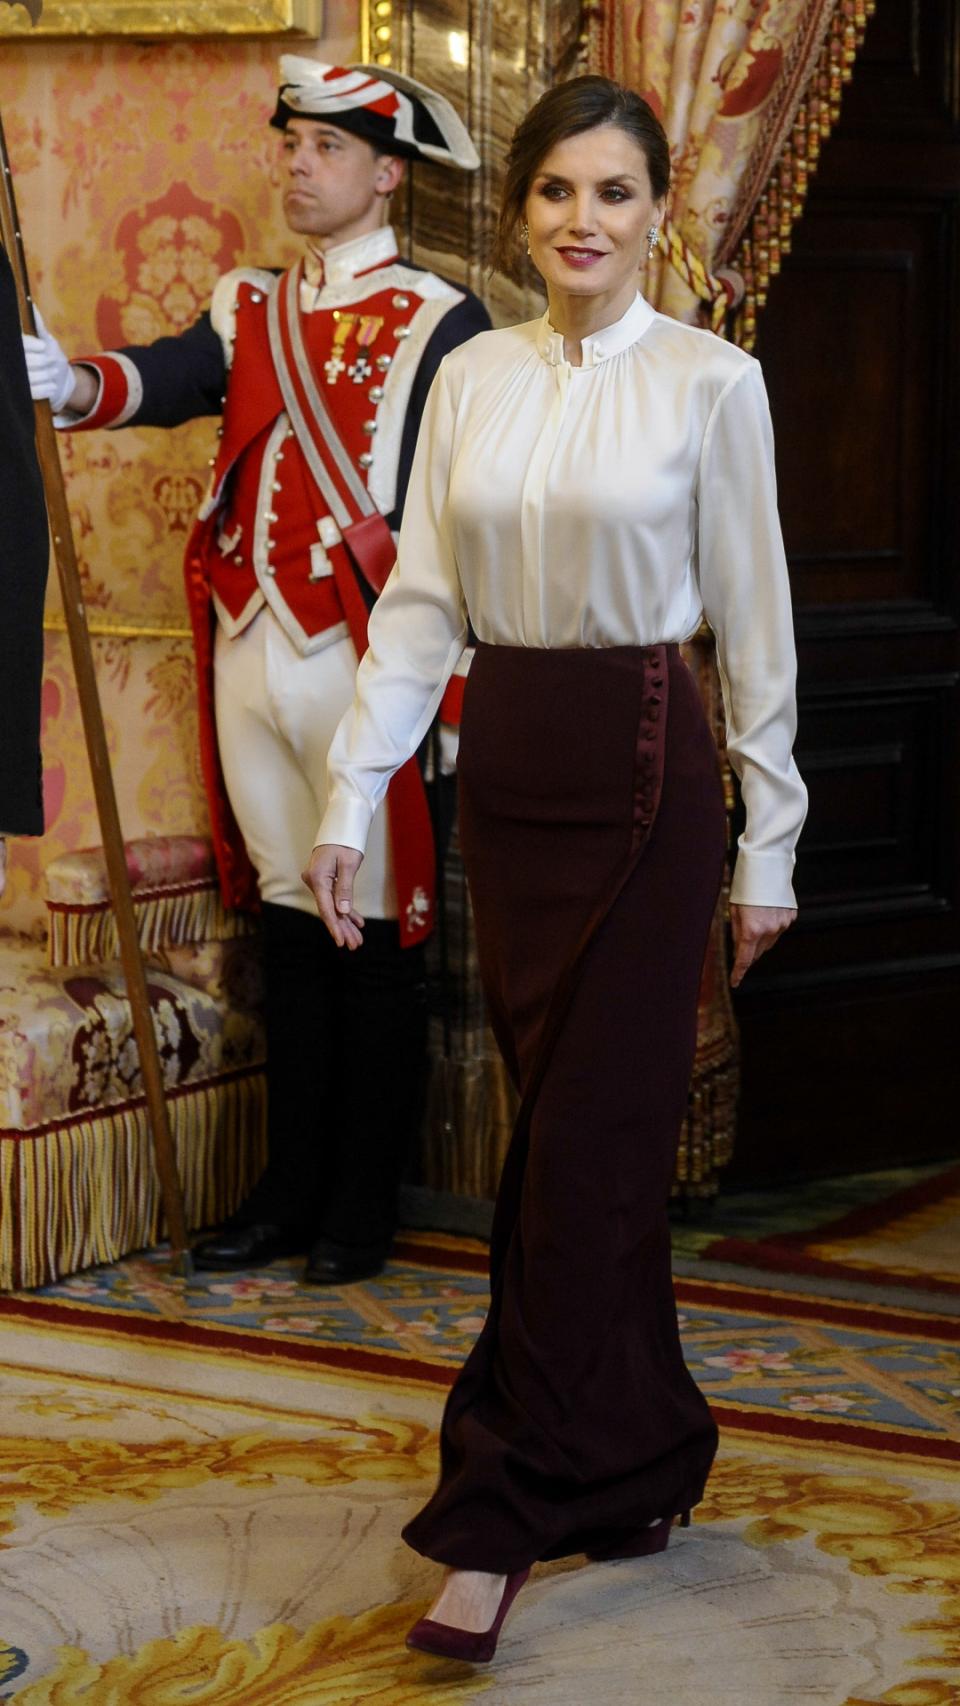 Fotografía individual de Letizia entrando en la estancia.